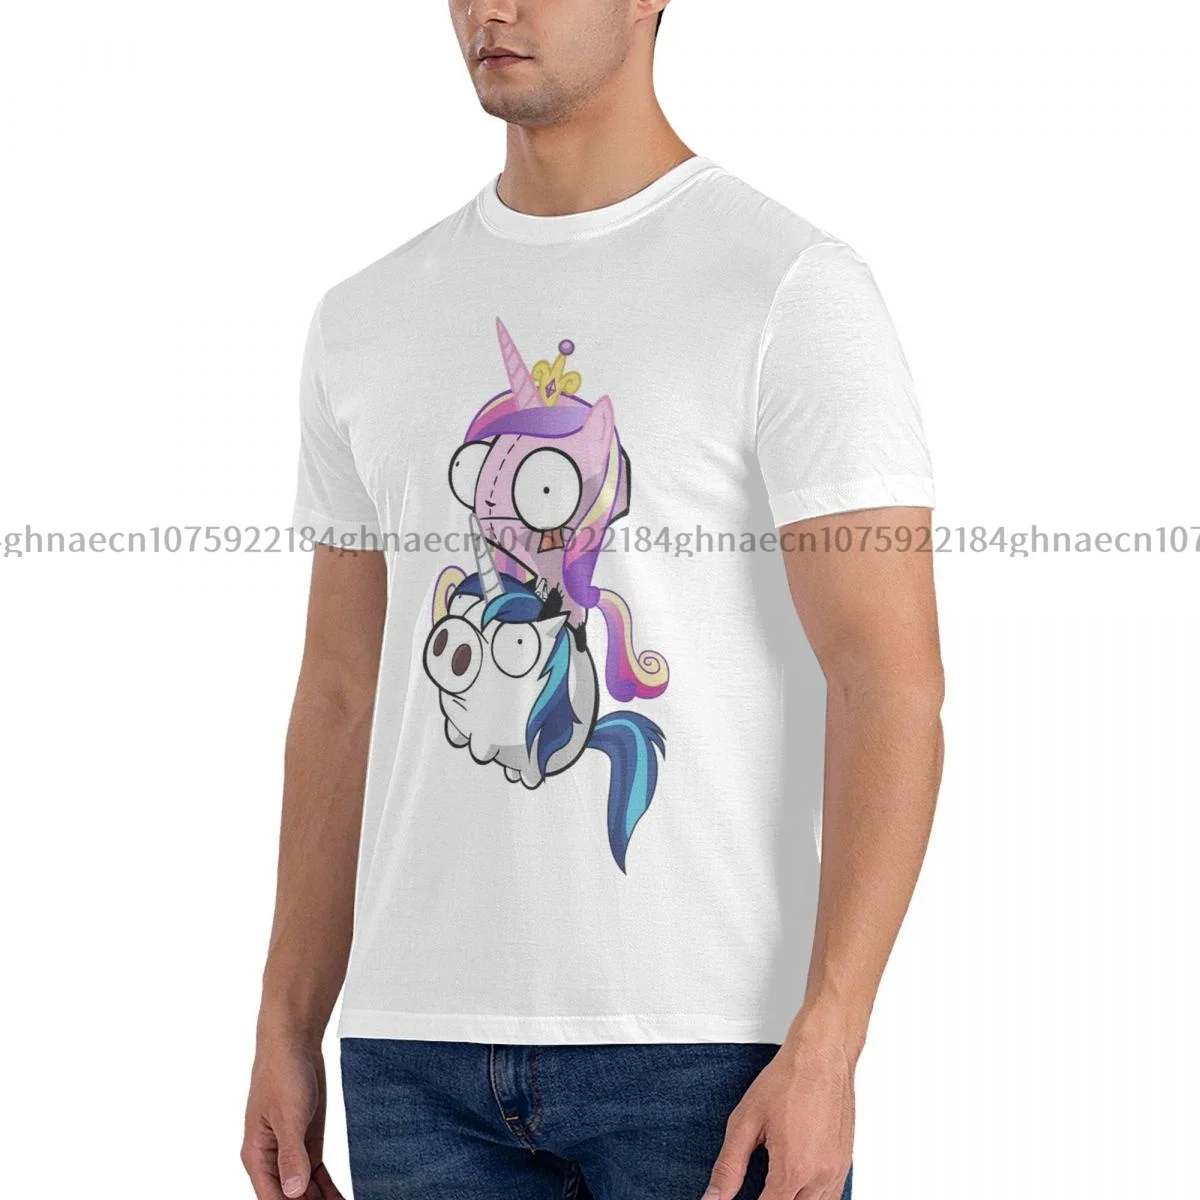 

Мужская рубашка сказочная свинья Invader Zim графическая хлопковая одежда повседневные футболки с коротким рукавом идея для подарка футболка